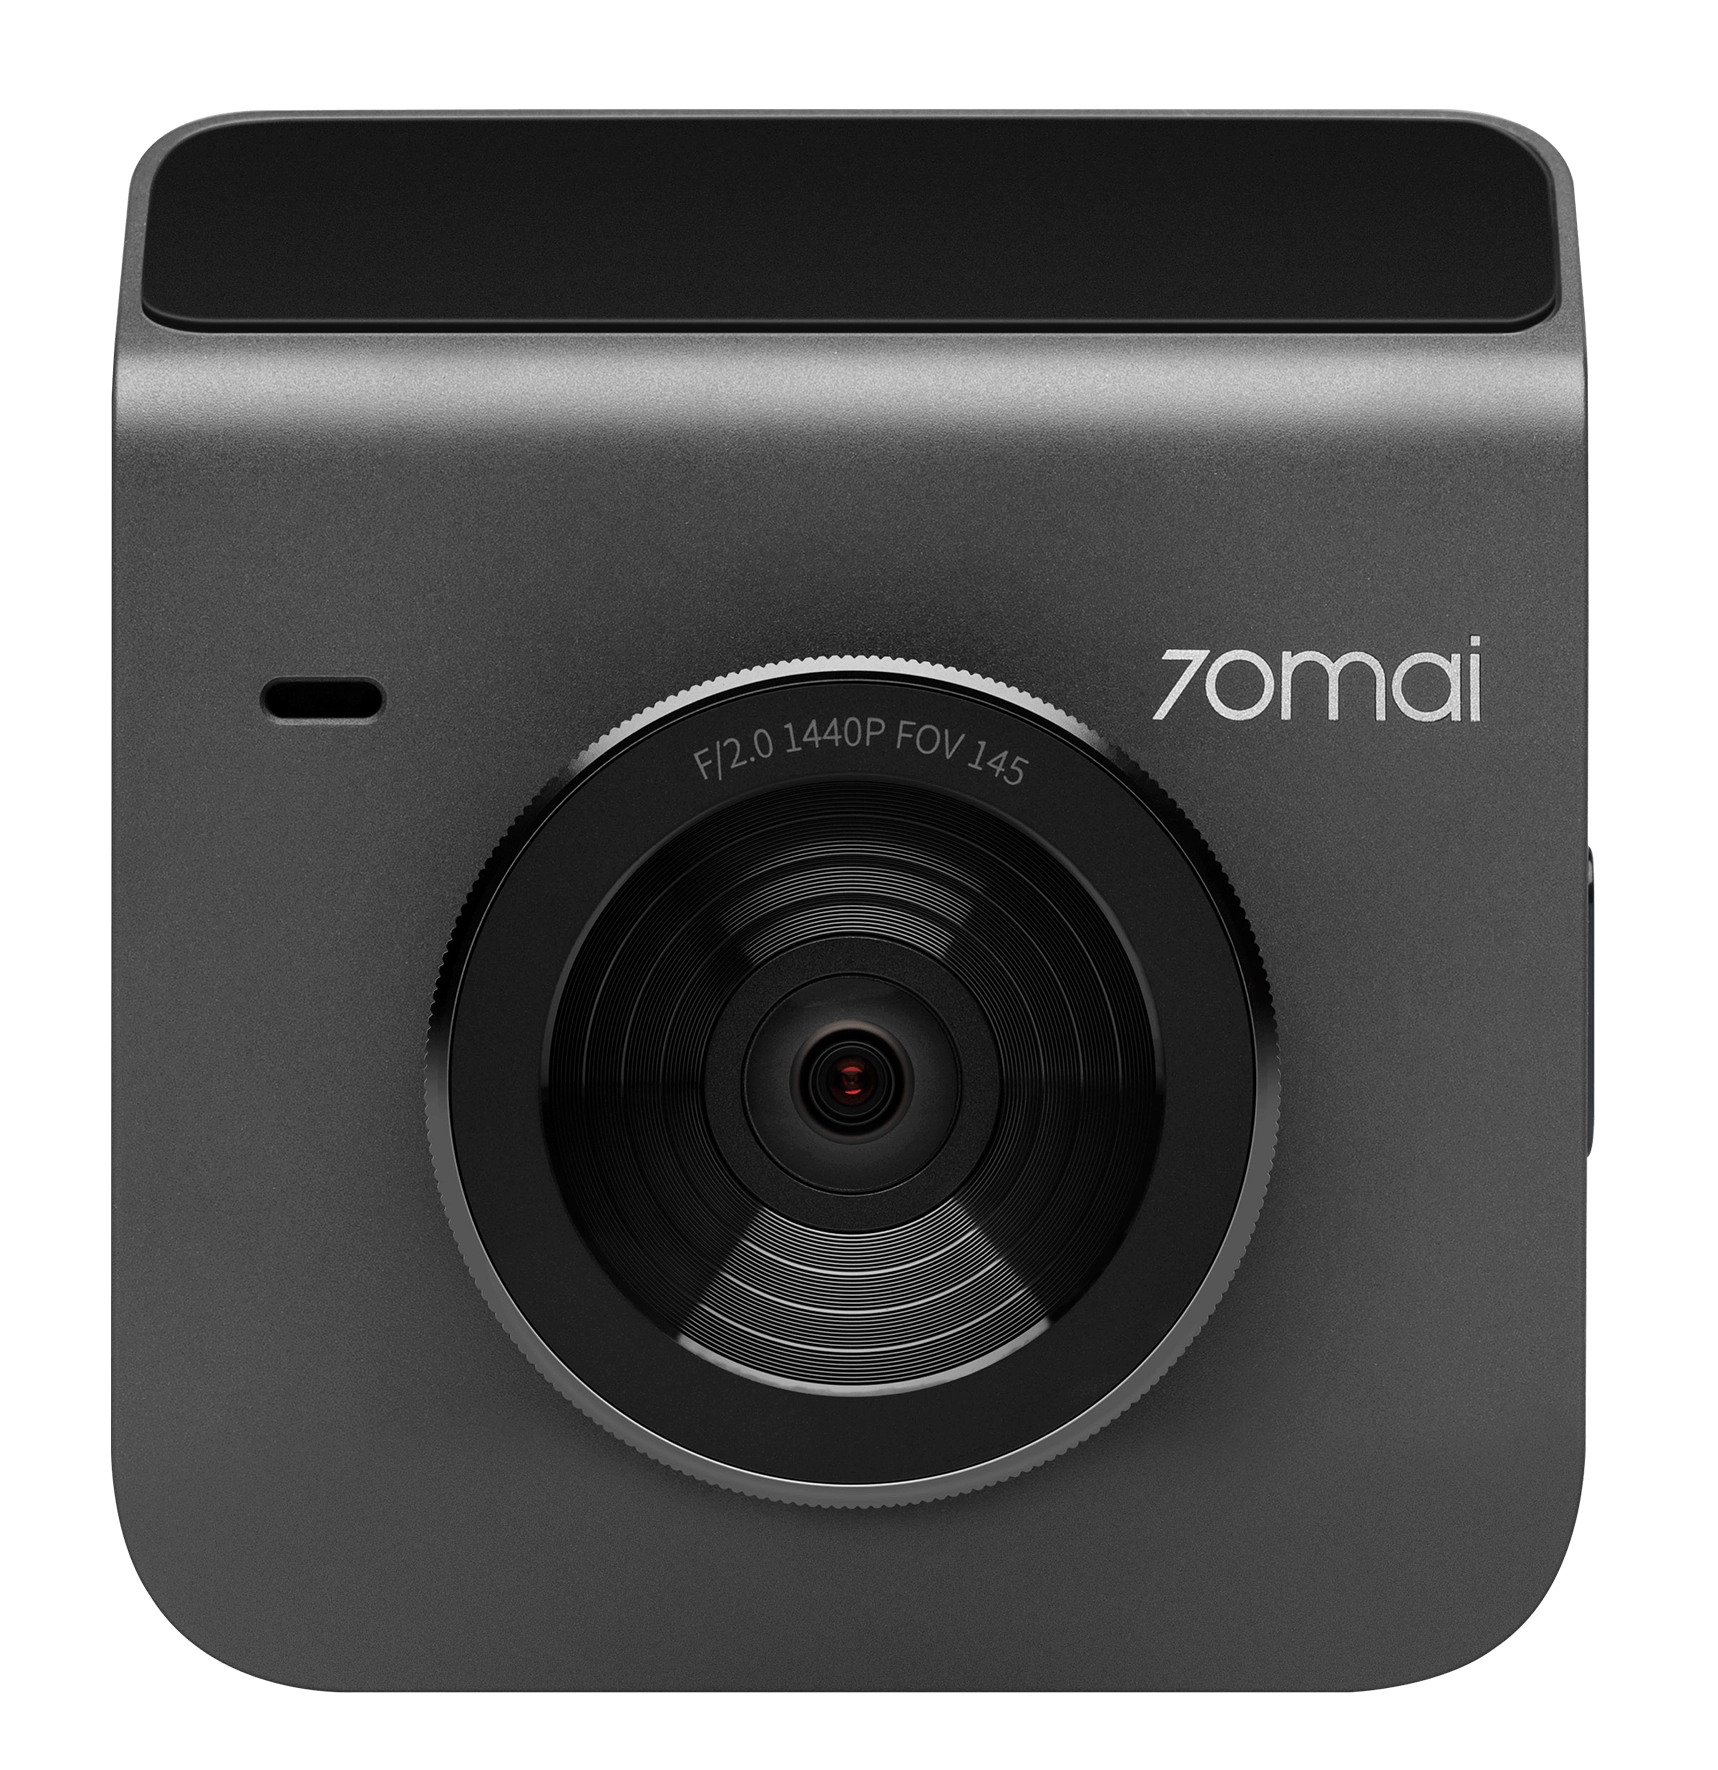 Картинка Видеорегистратор Xiaomi 70mai Dash Cam Grey (A400) + Rear Camera Kit Grey